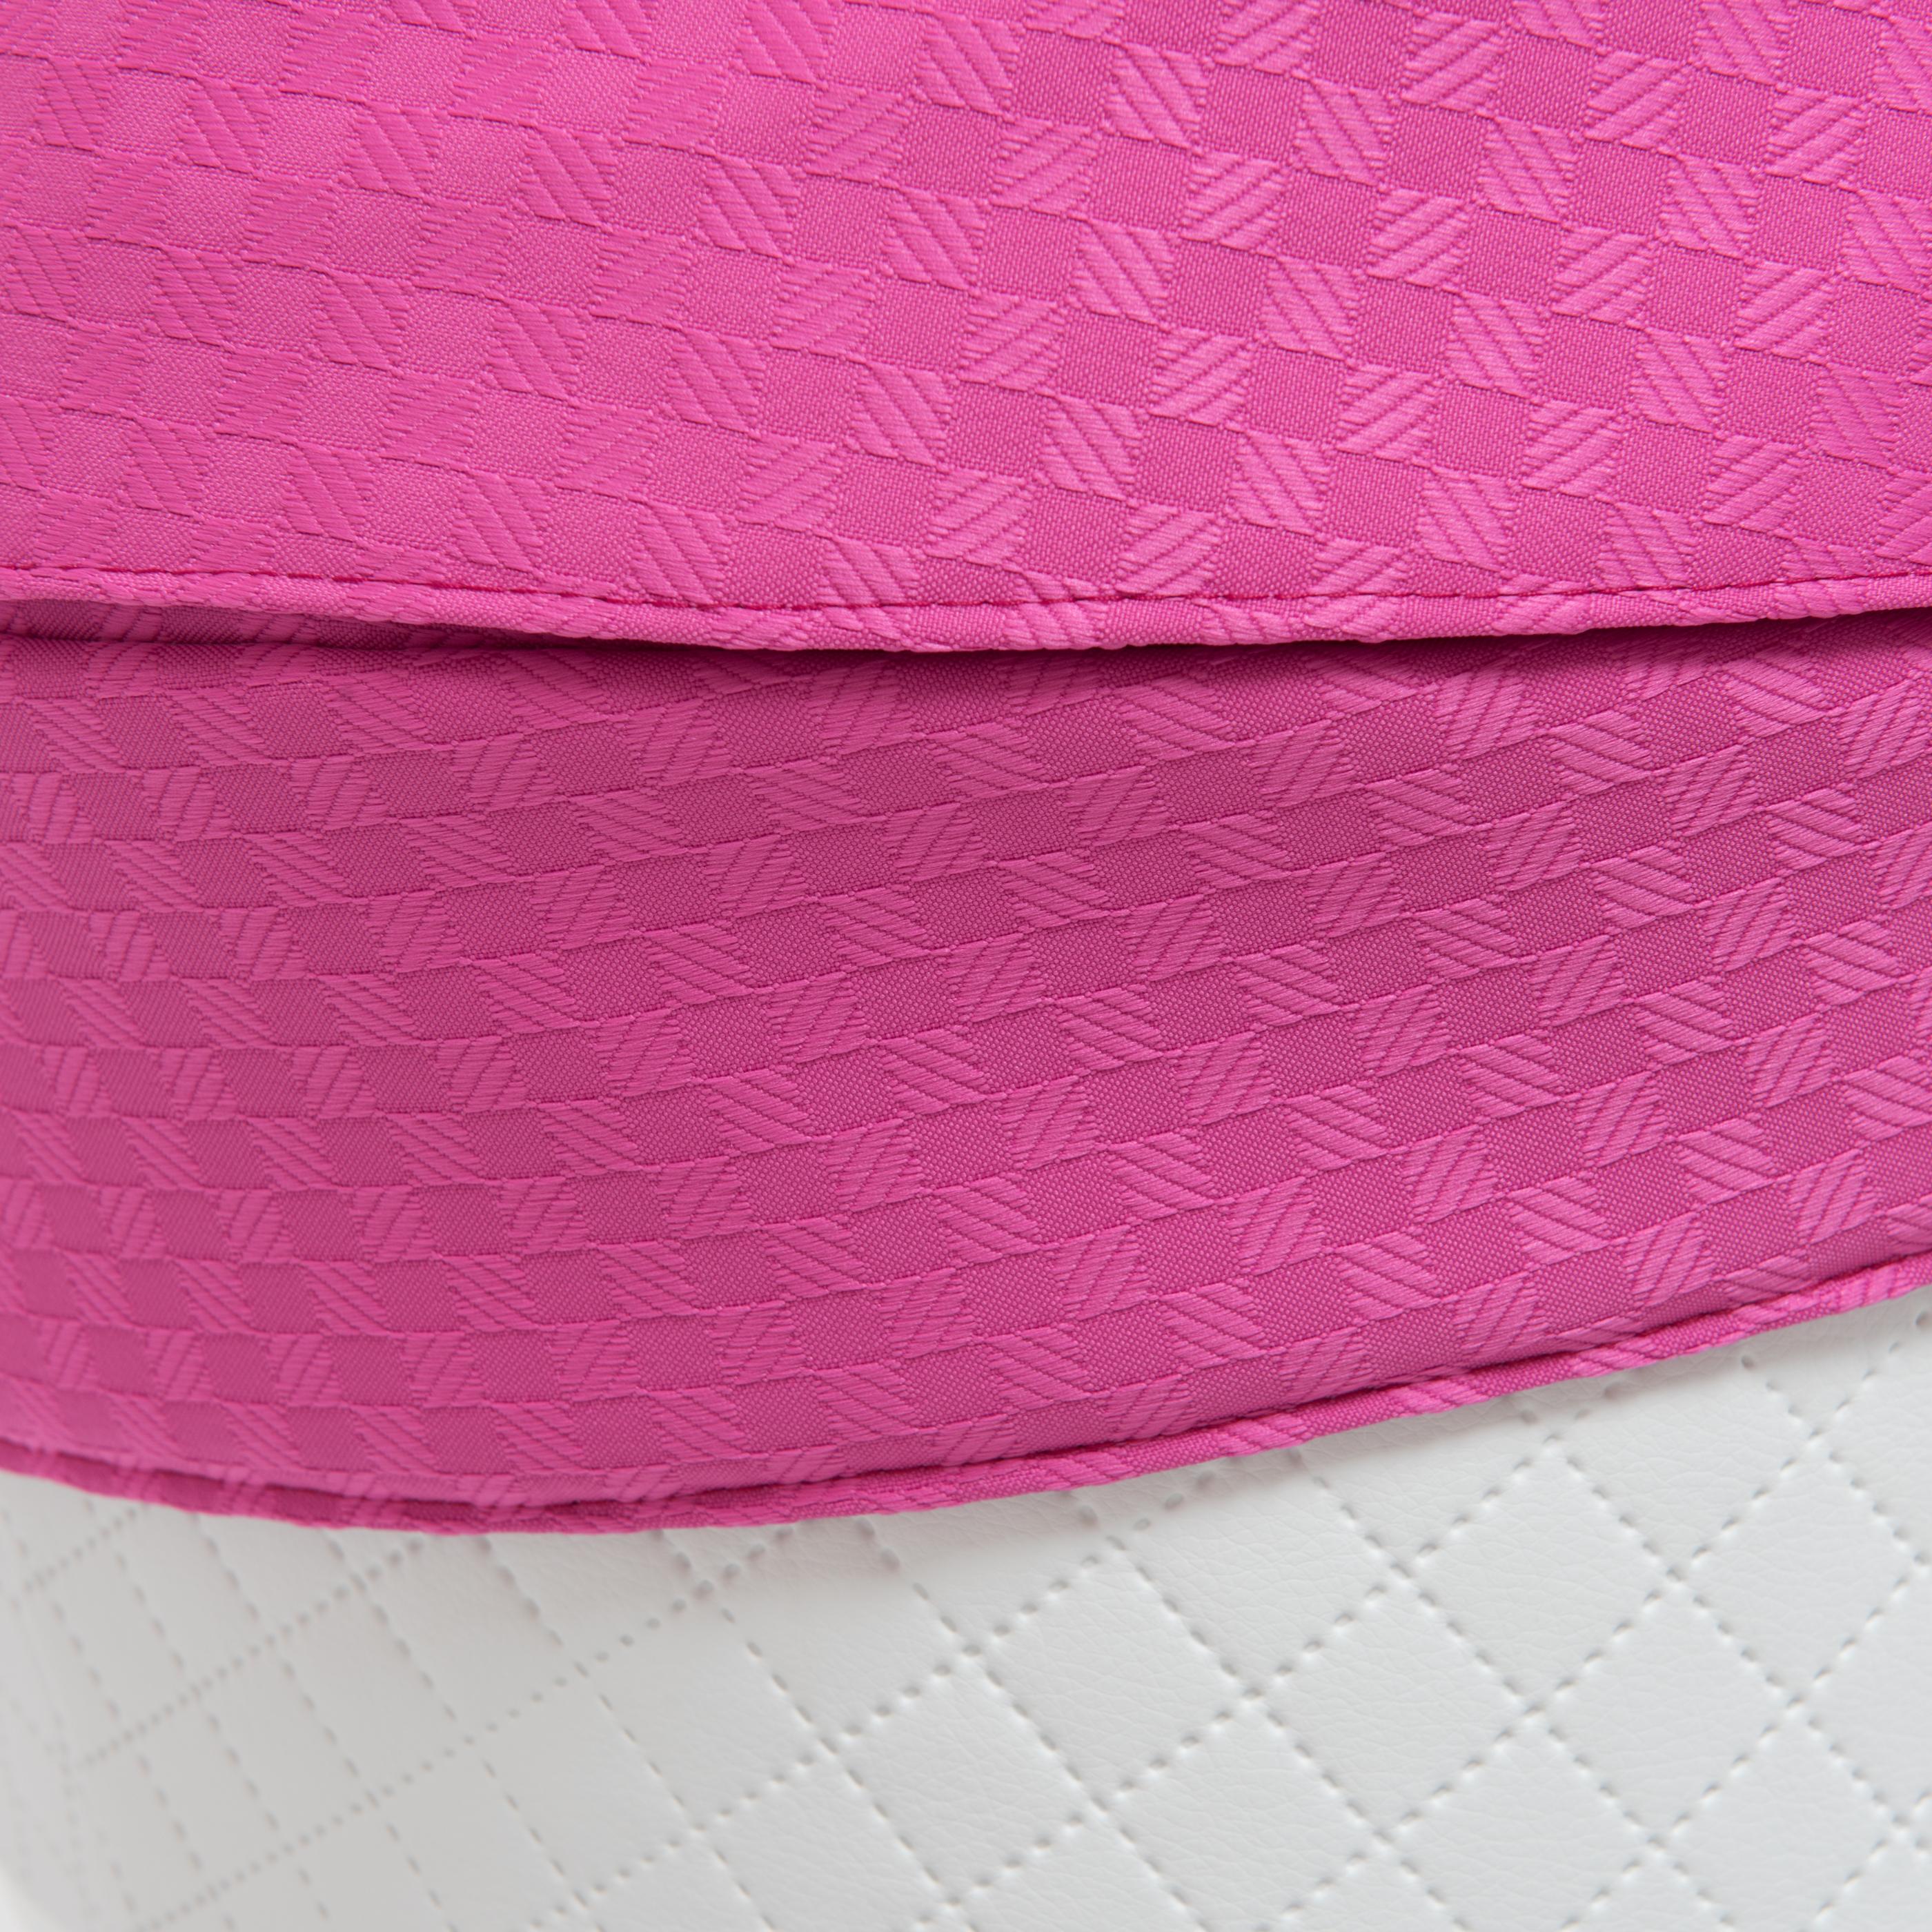 Коляска 3 в 1 Mr Sandman West-East Premium 50% Эко кожа Белый перфорированный-Розовый в принт - фото 5